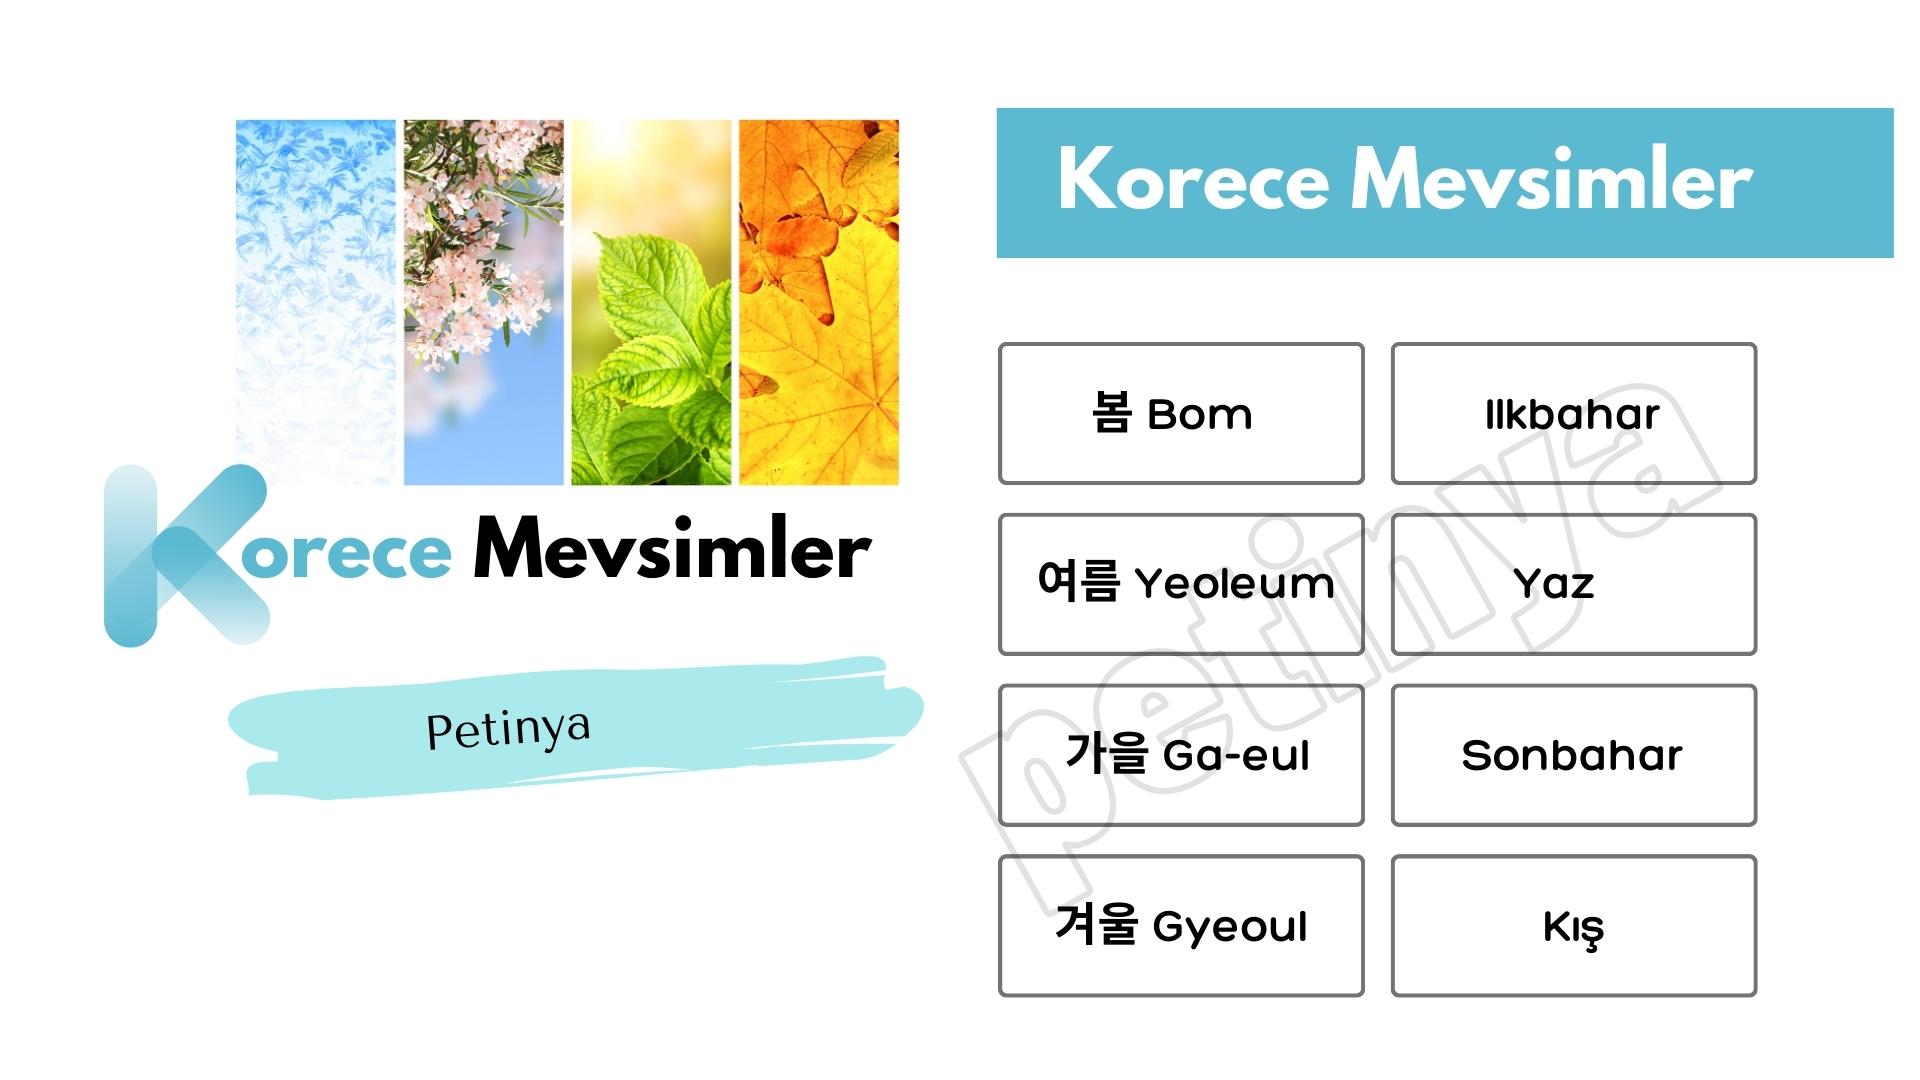 Korece Mevsimler ve Türkçe Anlamları